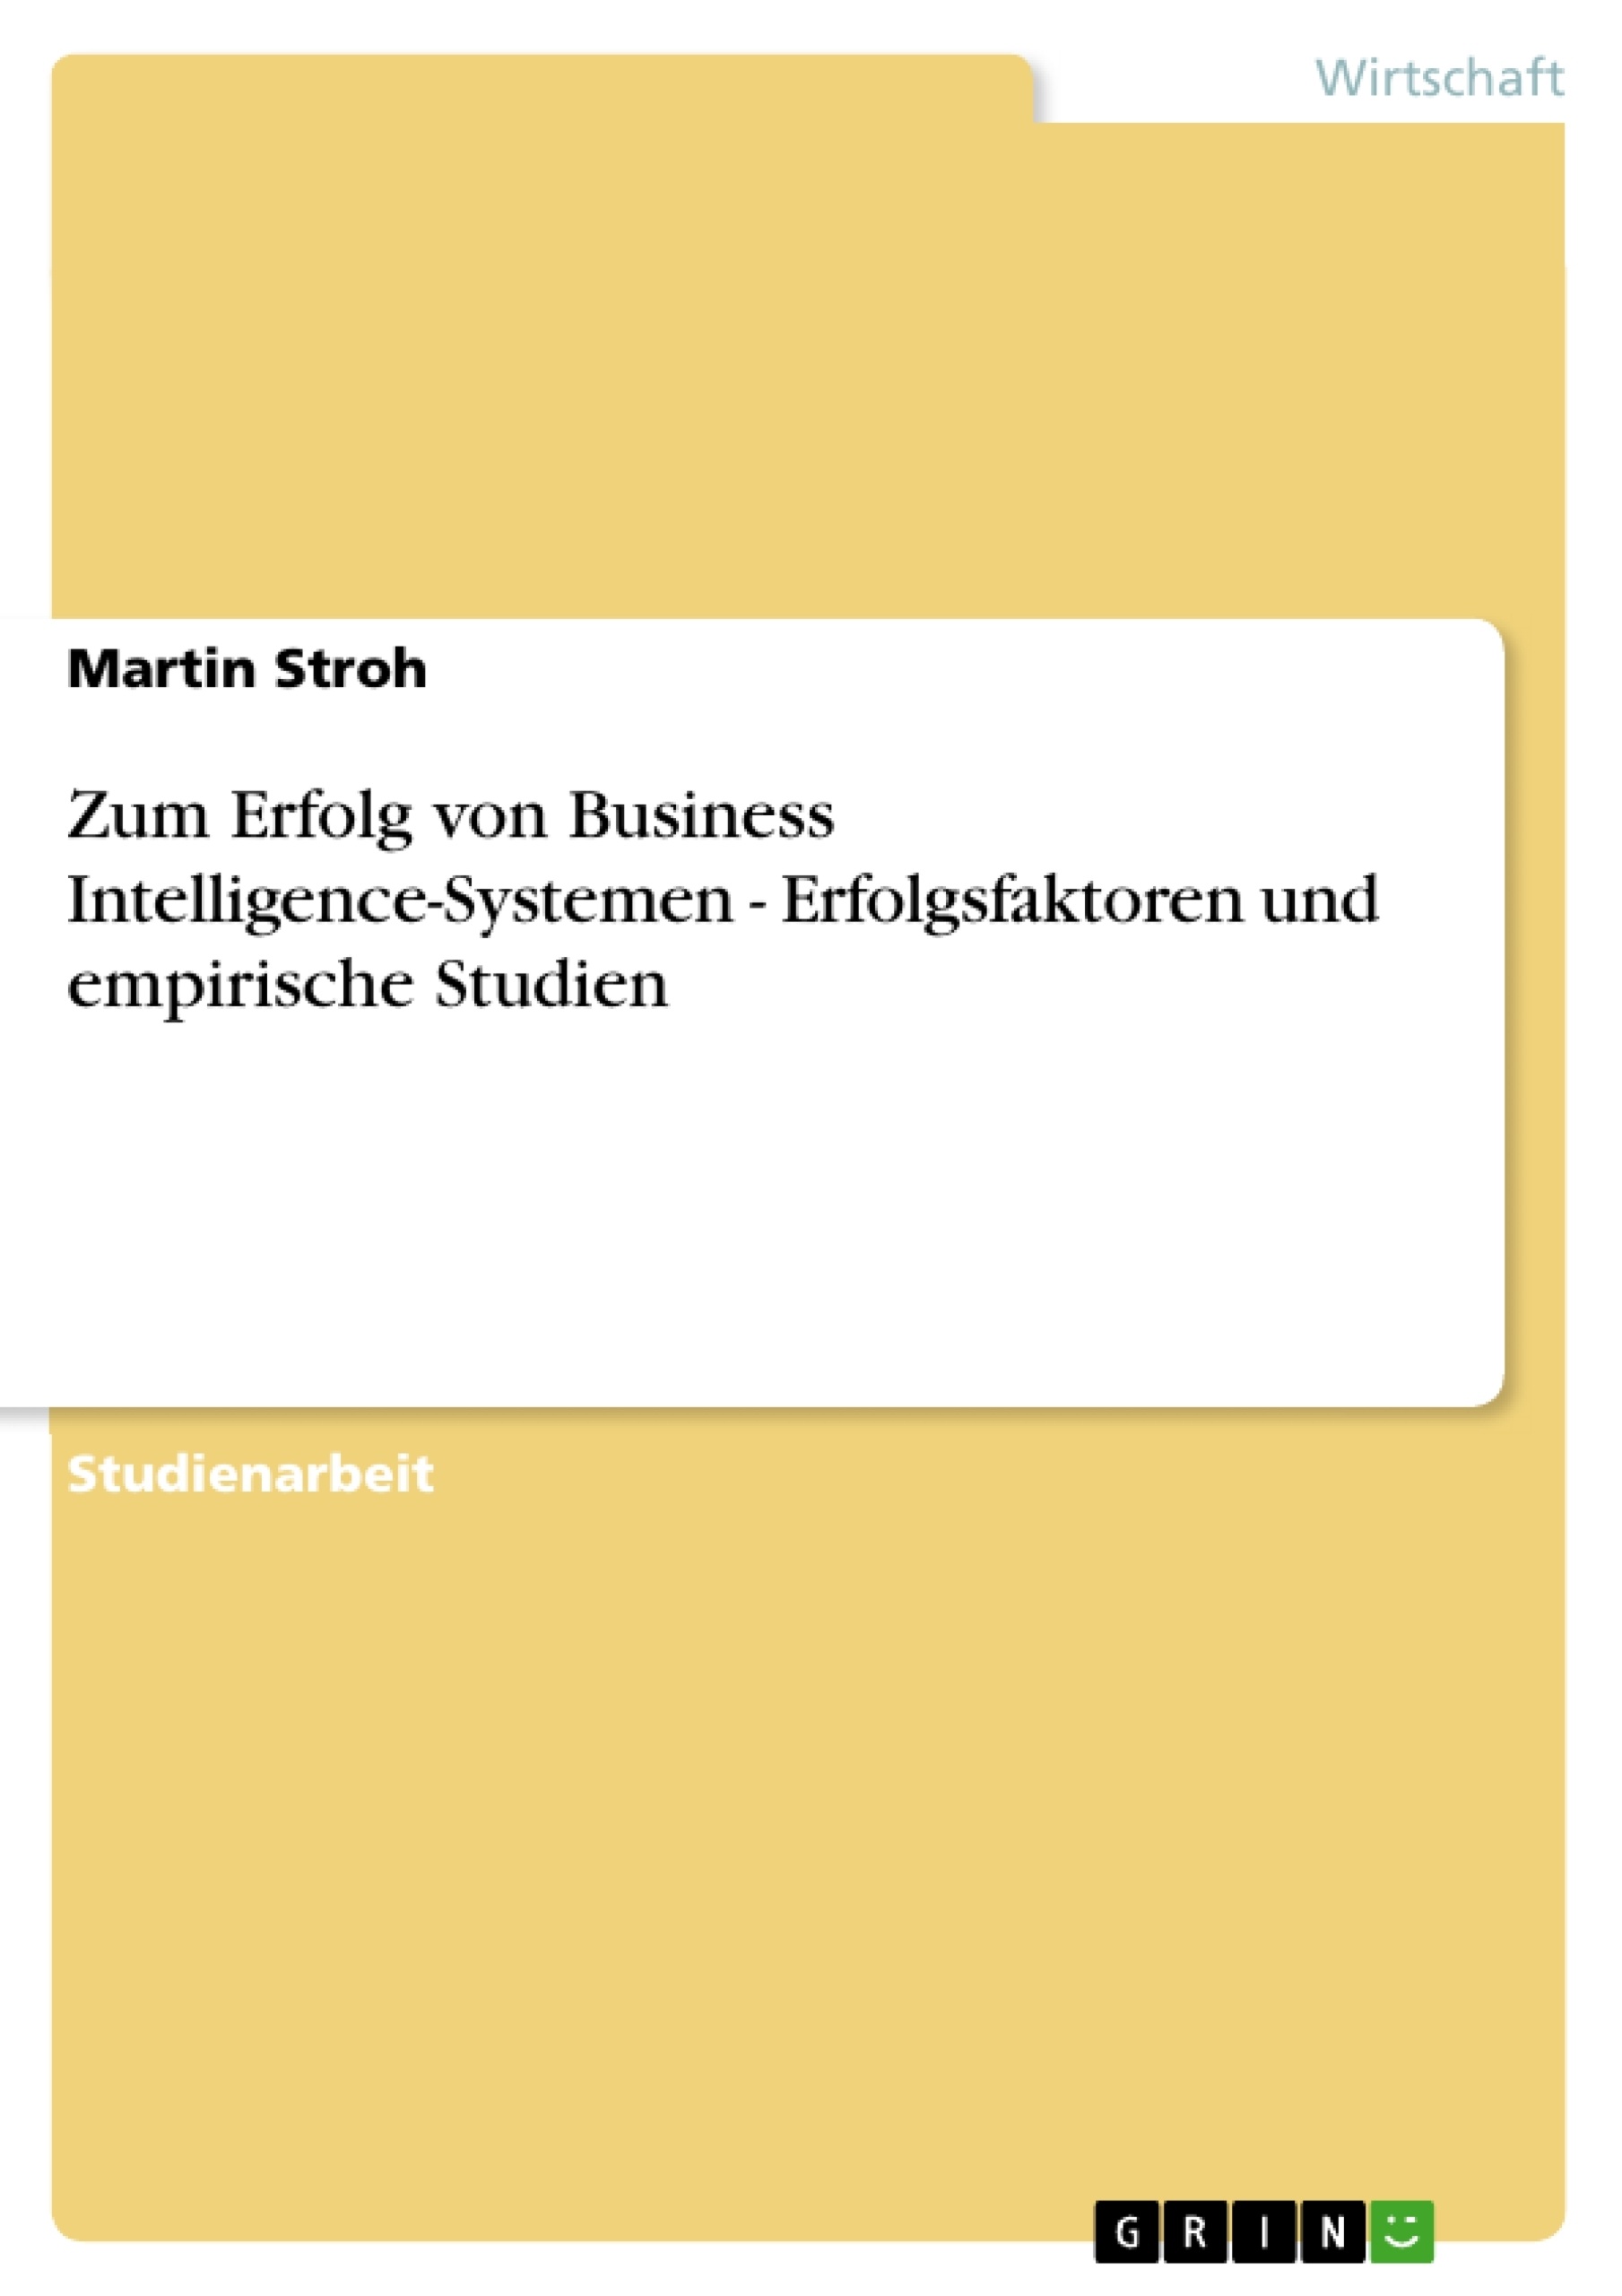 Titre: Zum Erfolg von Business Intelligence-Systemen - Erfolgsfaktoren und empirische Studien